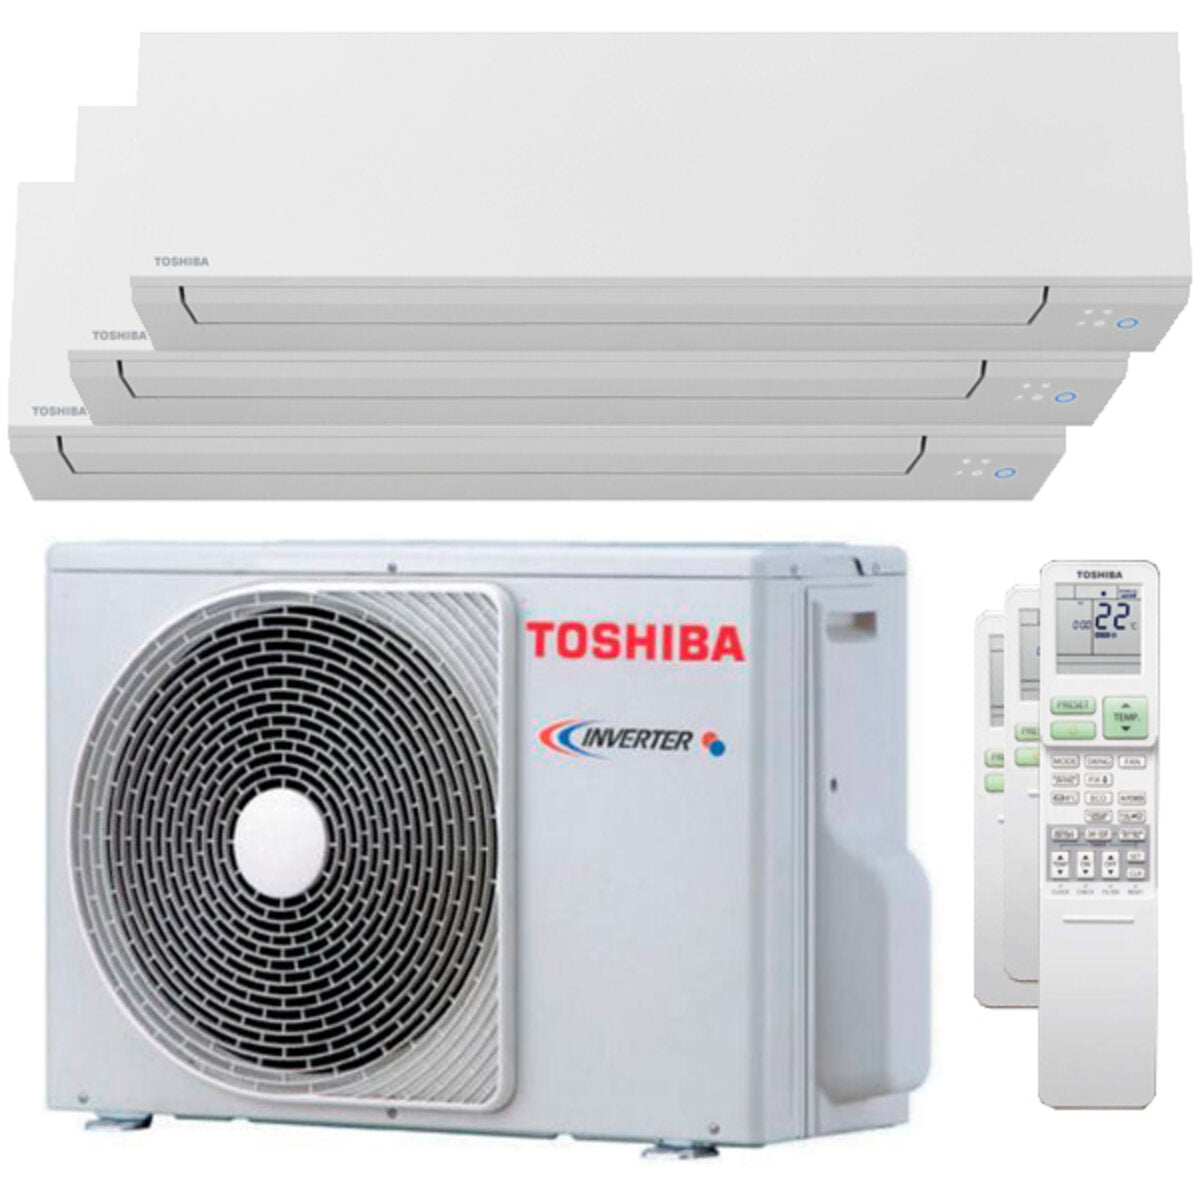 Climatiseur trial split Toshiba SHORAI Edge 7000 + 7000 + 16000 BTU onduleur A ++ unité extérieure wifi 5,2 kW